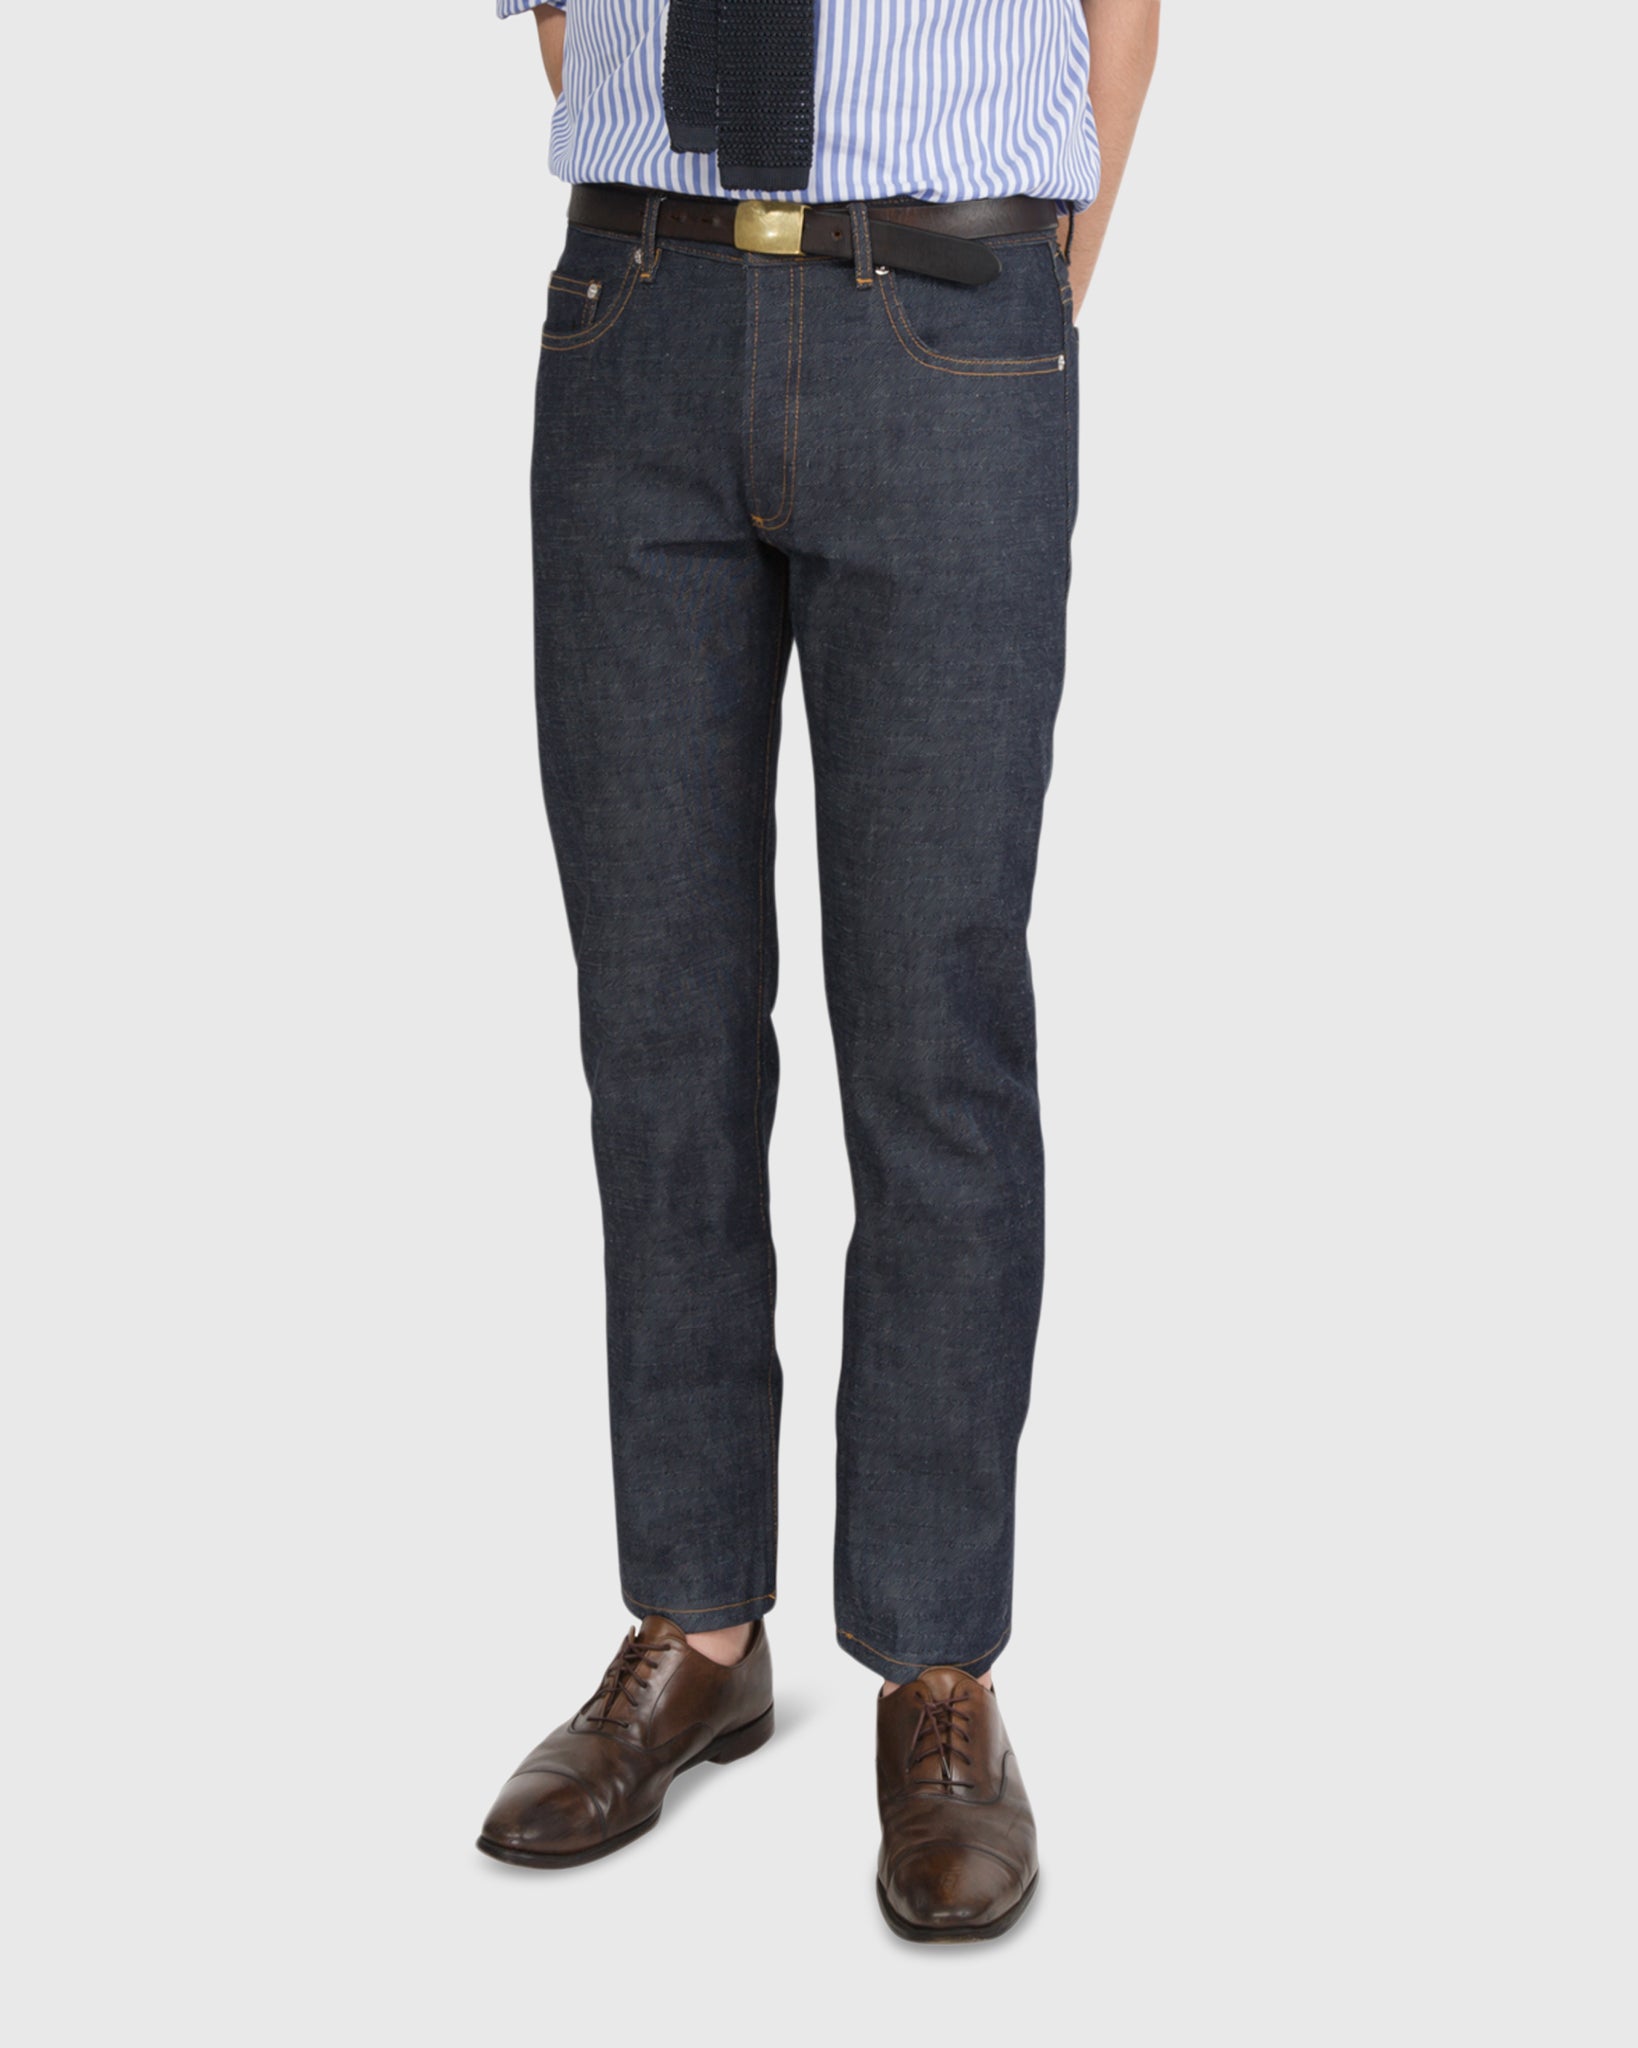 Standard Jean in Rigid | Shop Sid Mashburn